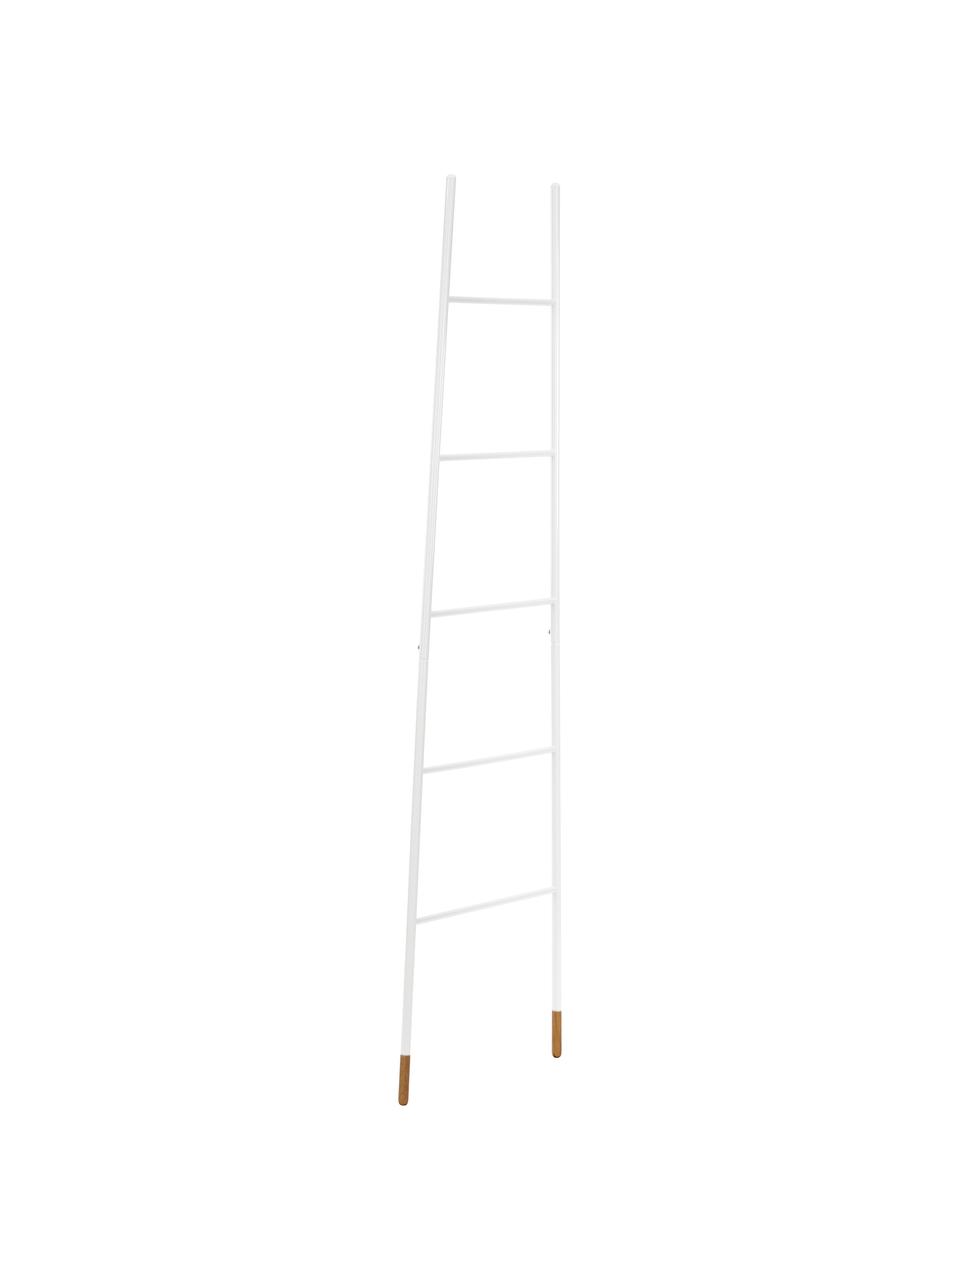 Handtuchleiter Rack Ladder in Weiss, Weiss, B 54 x H 175 cm